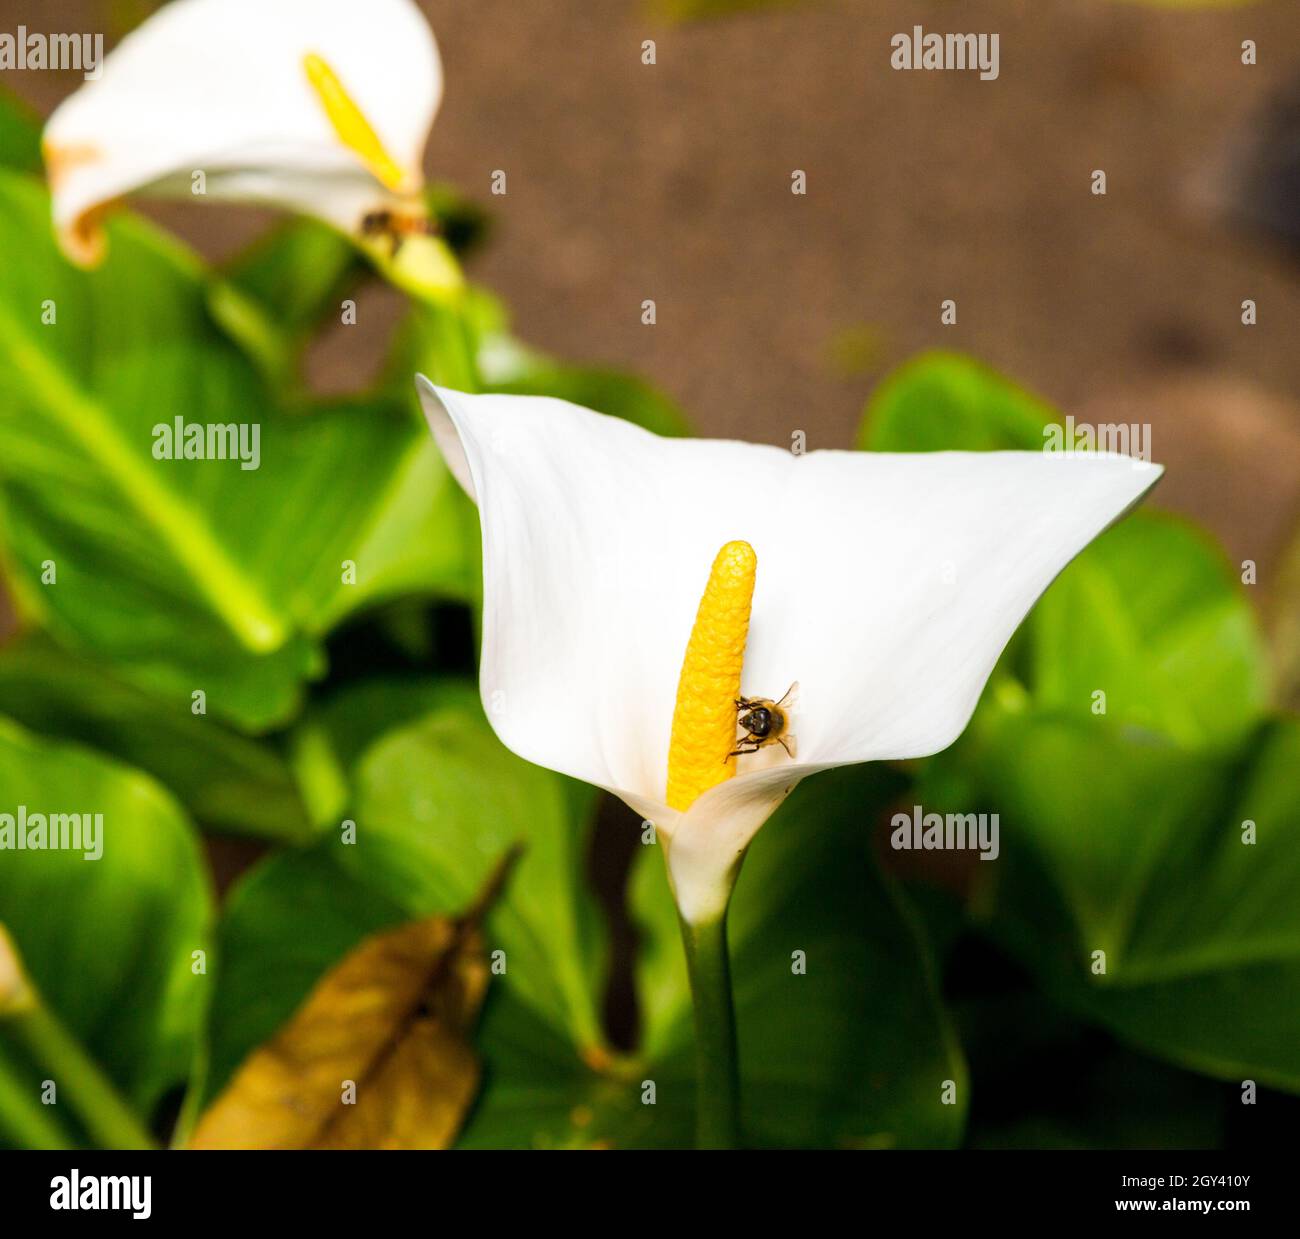 Arum lily a menudo utilizado en funerales. También se llama lirio de paz. Foto de stock